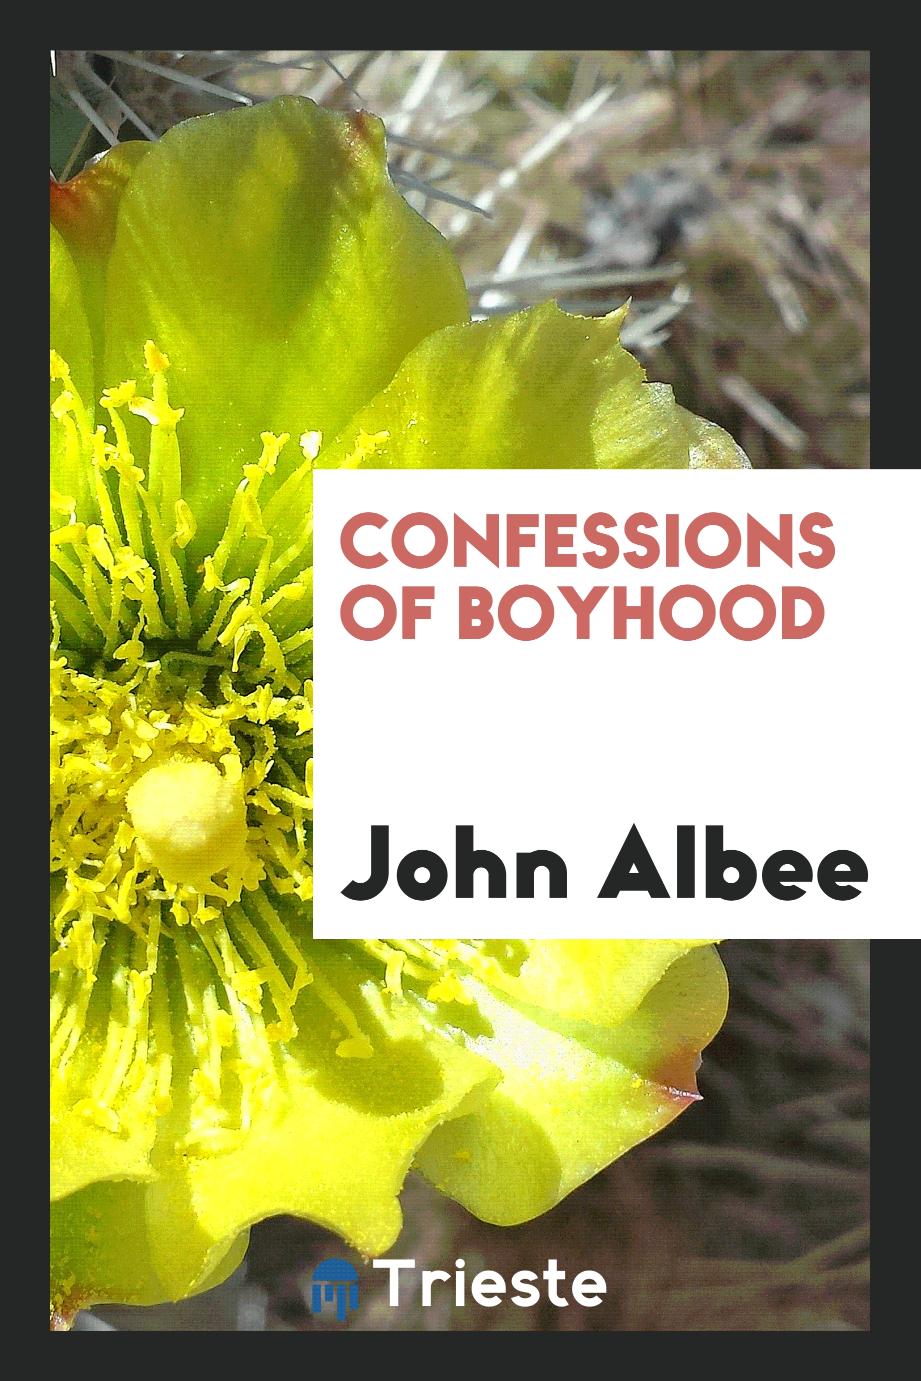 Confessions of boyhood